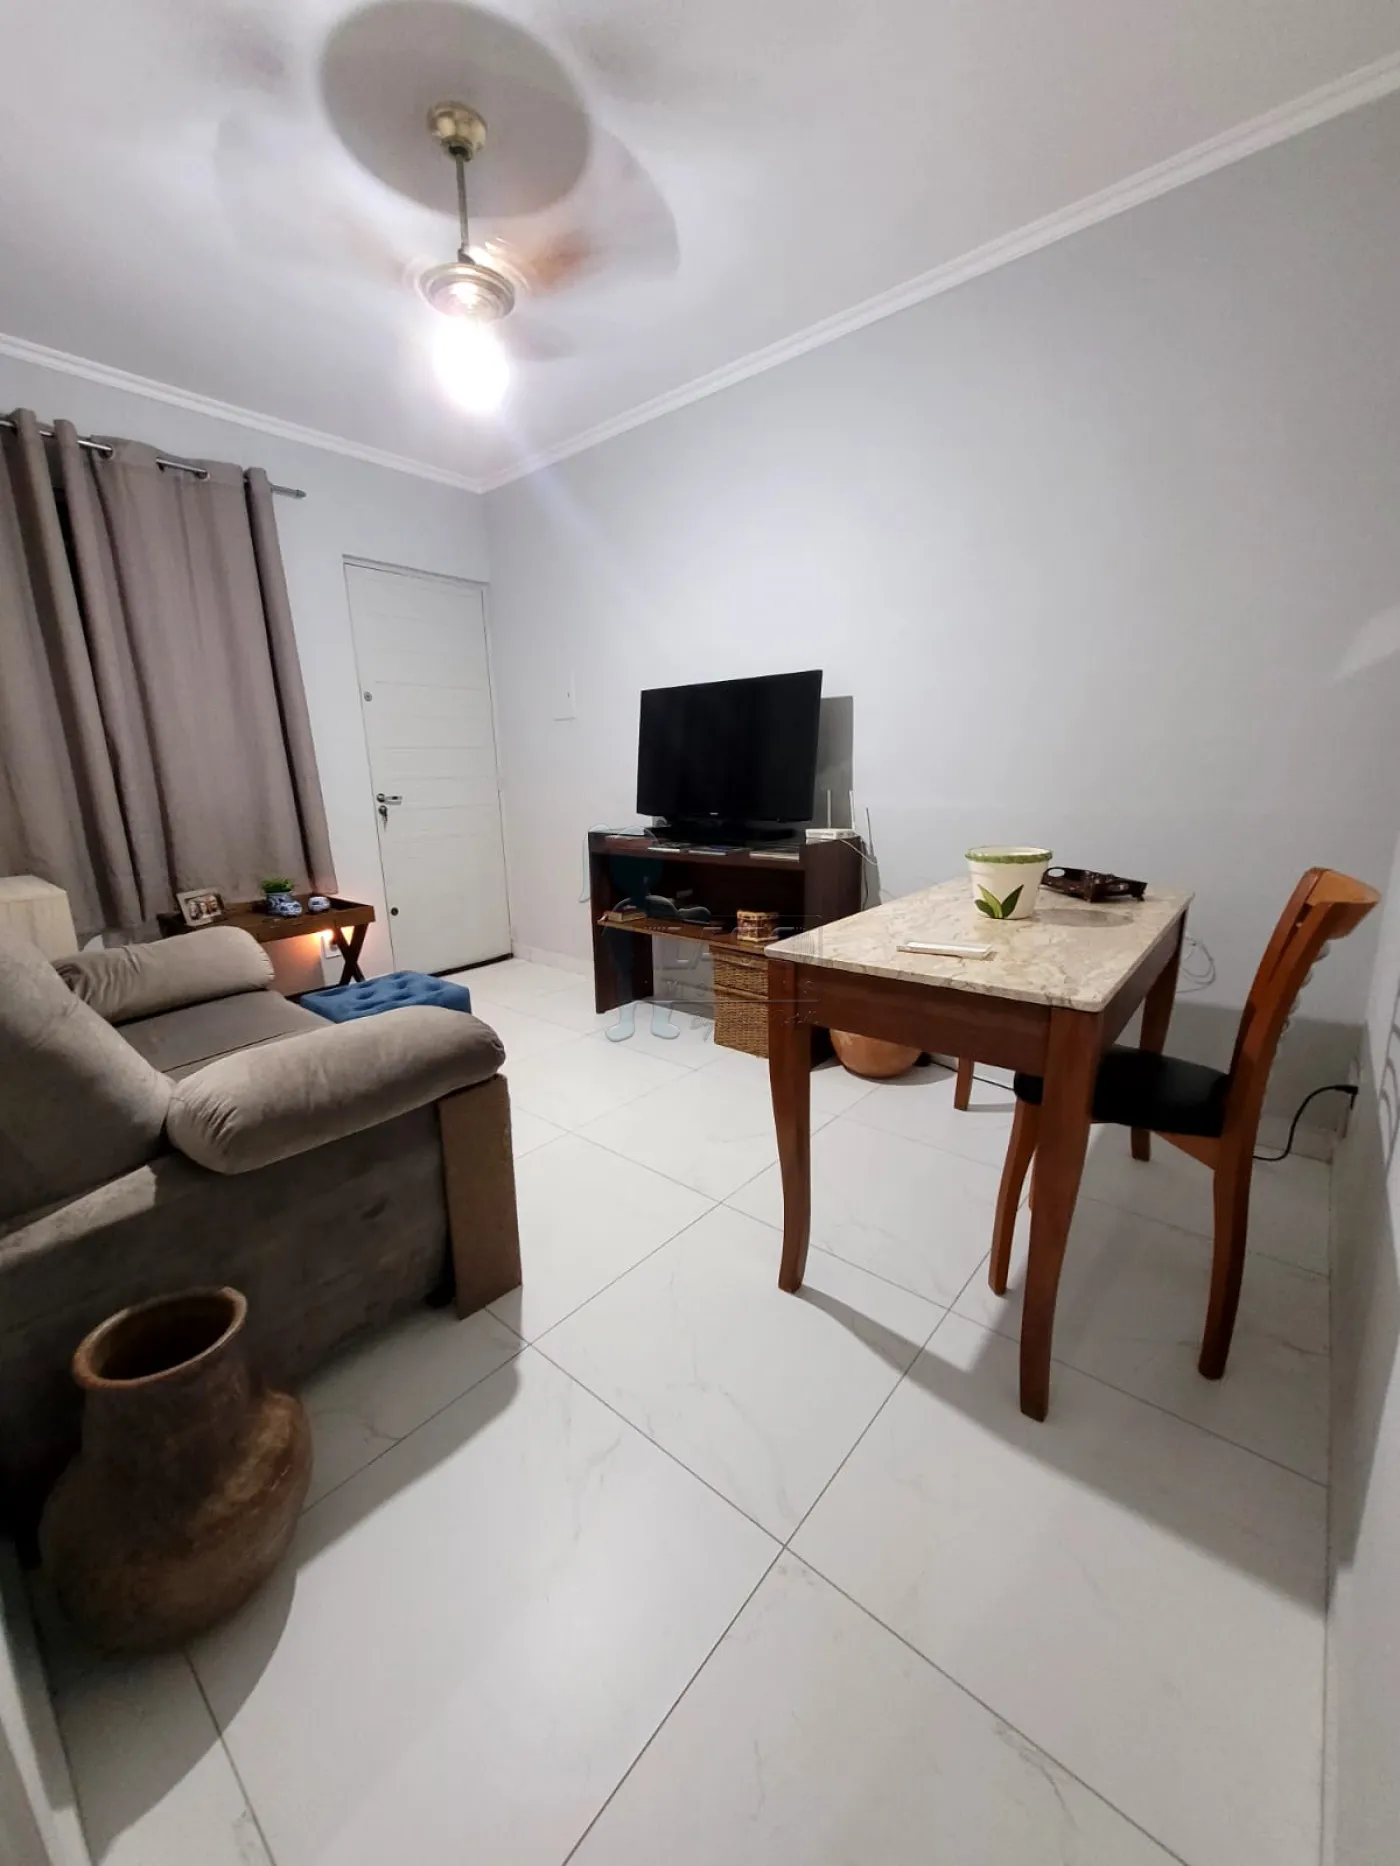 Comprar Apartamento / Padrão em Ribeirão Preto R$ 115.000,00 - Foto 3